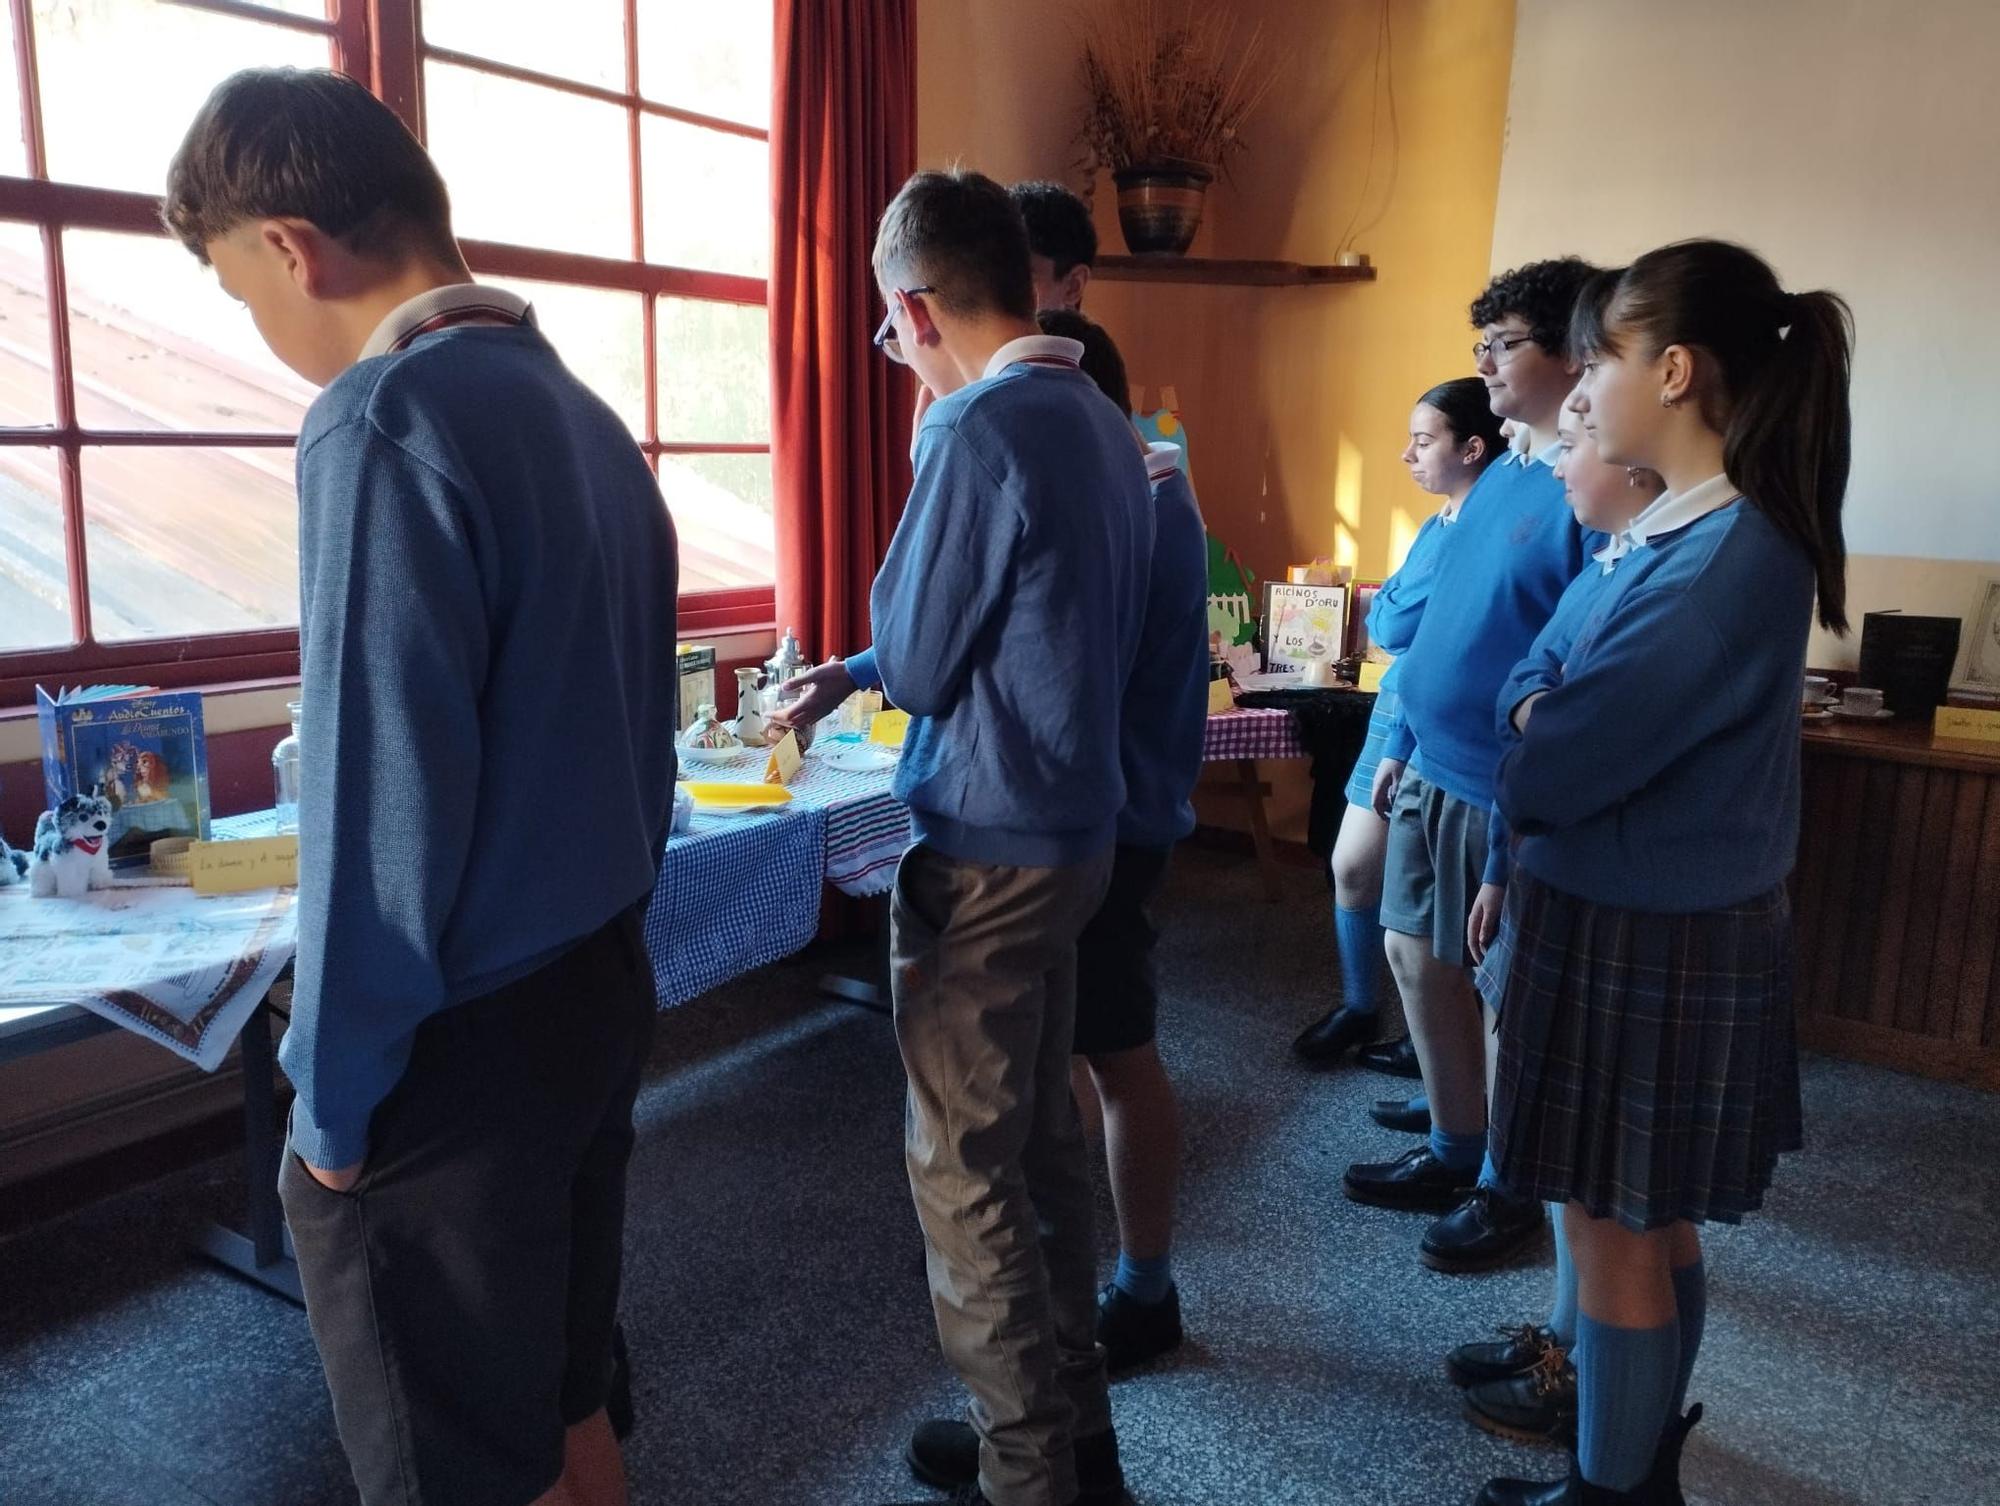 Pote asturiano, queso, uvas y chocolate para celebrar el Día del Libro en el colegio Reina Adosinda de Pravia